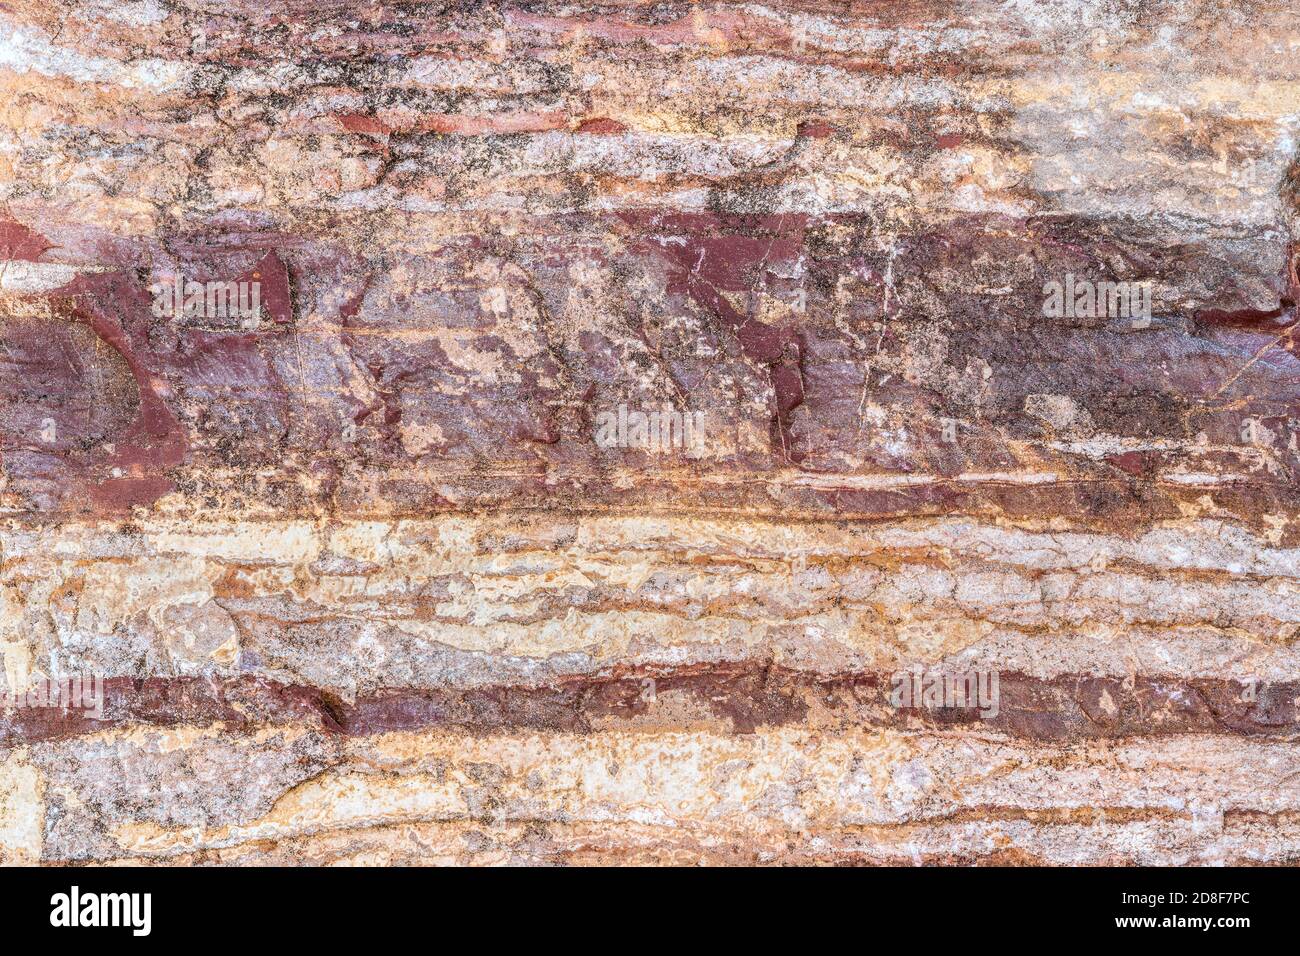 Roccia metamorfica precambriana, regione del Lago superiore, W. penisola superiore Michigan, USA, 4.5 a 5 miliardi di anni, di Dominique Braud/Dembinsky Foto A Foto Stock